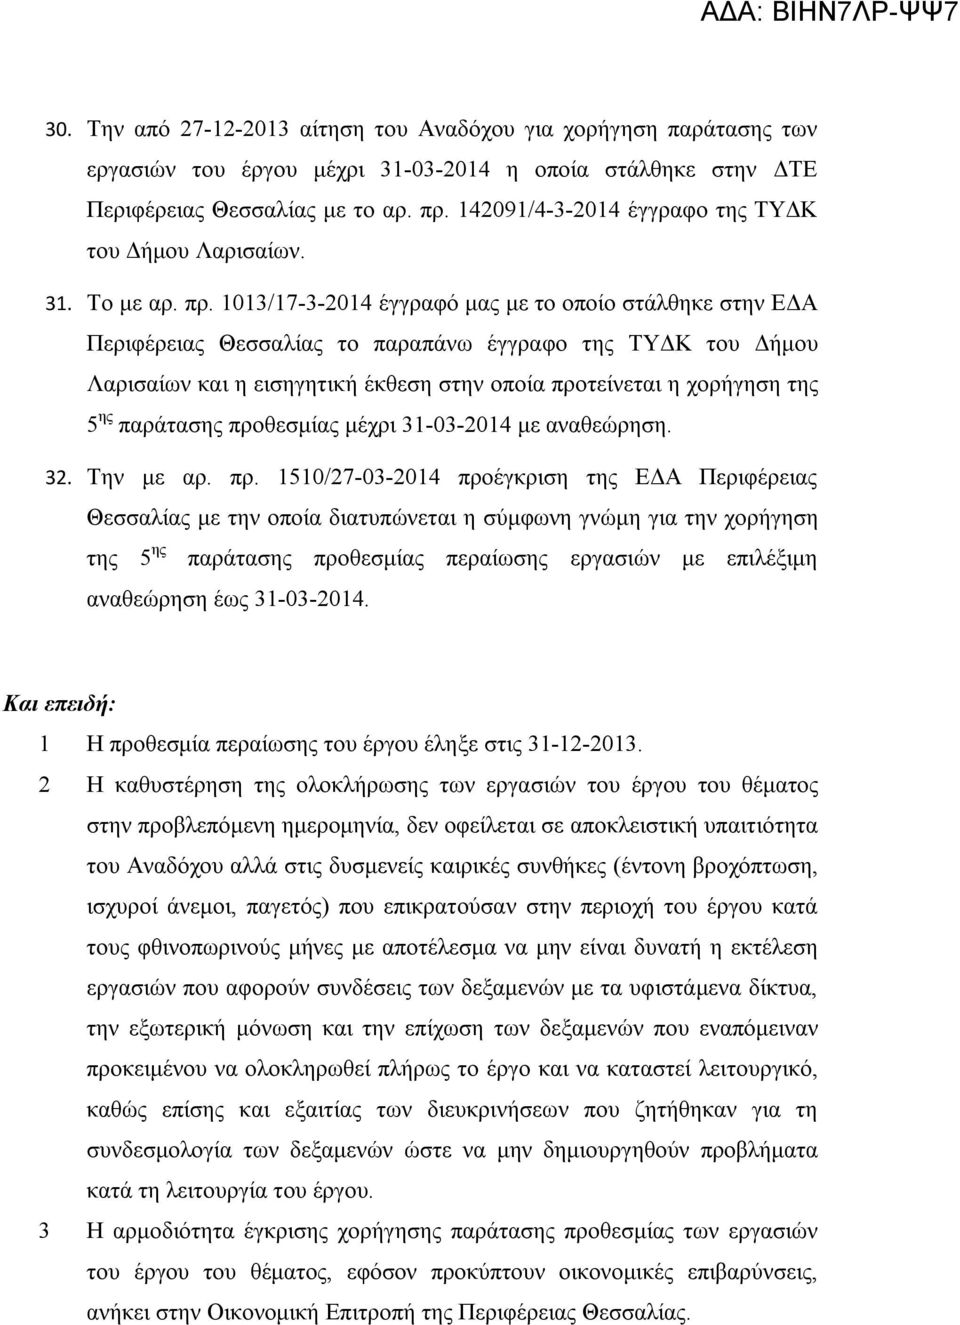 1013/17-3-2014 έγγραφό μας με το οποίο στάλθηκε στην ΕΔΑ Περιφέρειας Θεσσαλίας το παραπάνω έγγραφο της ΤΥΔΚ του Δήμου Λαρισαίων και η εισηγητική έκθεση στην οποία προτείνεται η χορήγηση της 5 ης